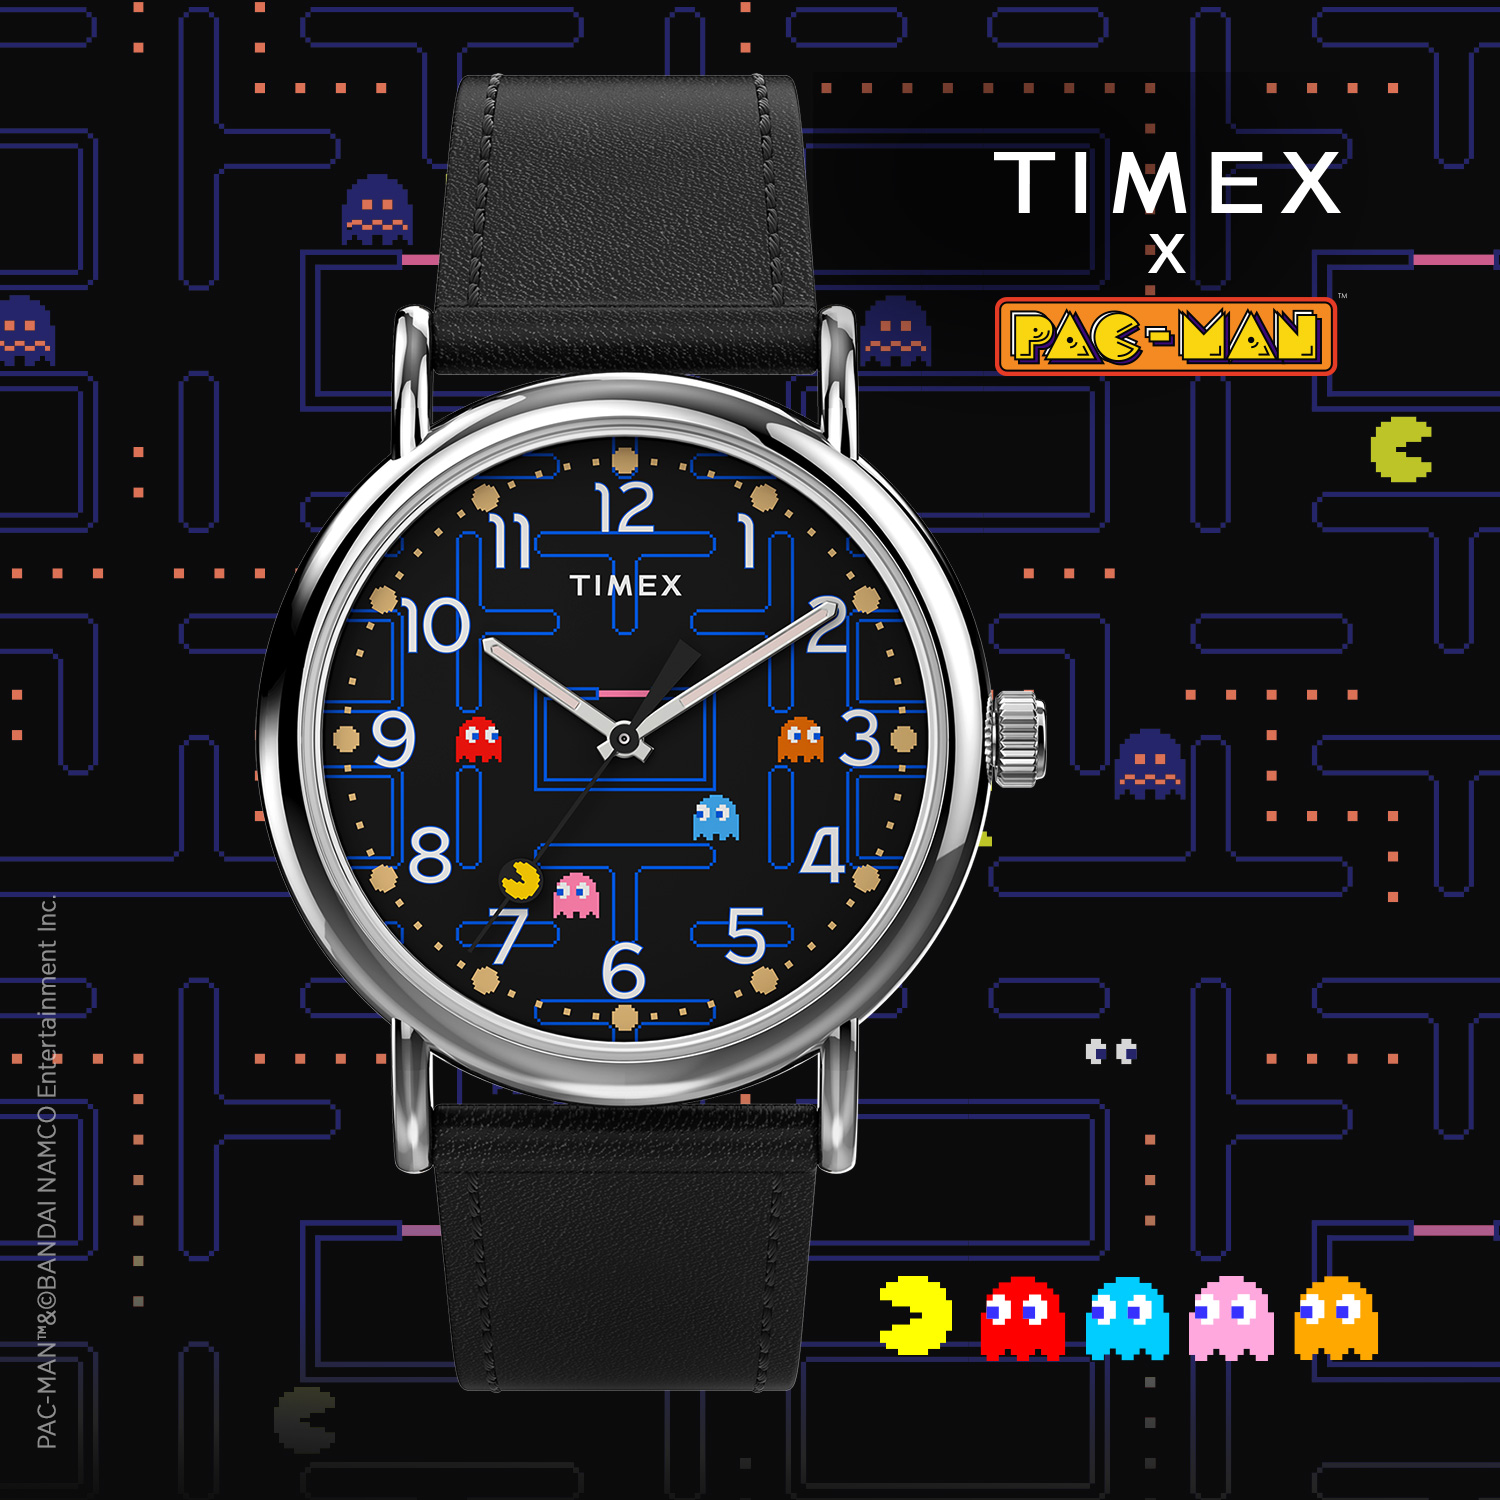 米国の腕時計ブランド タイメックスが日本を代表するビデオゲーム 